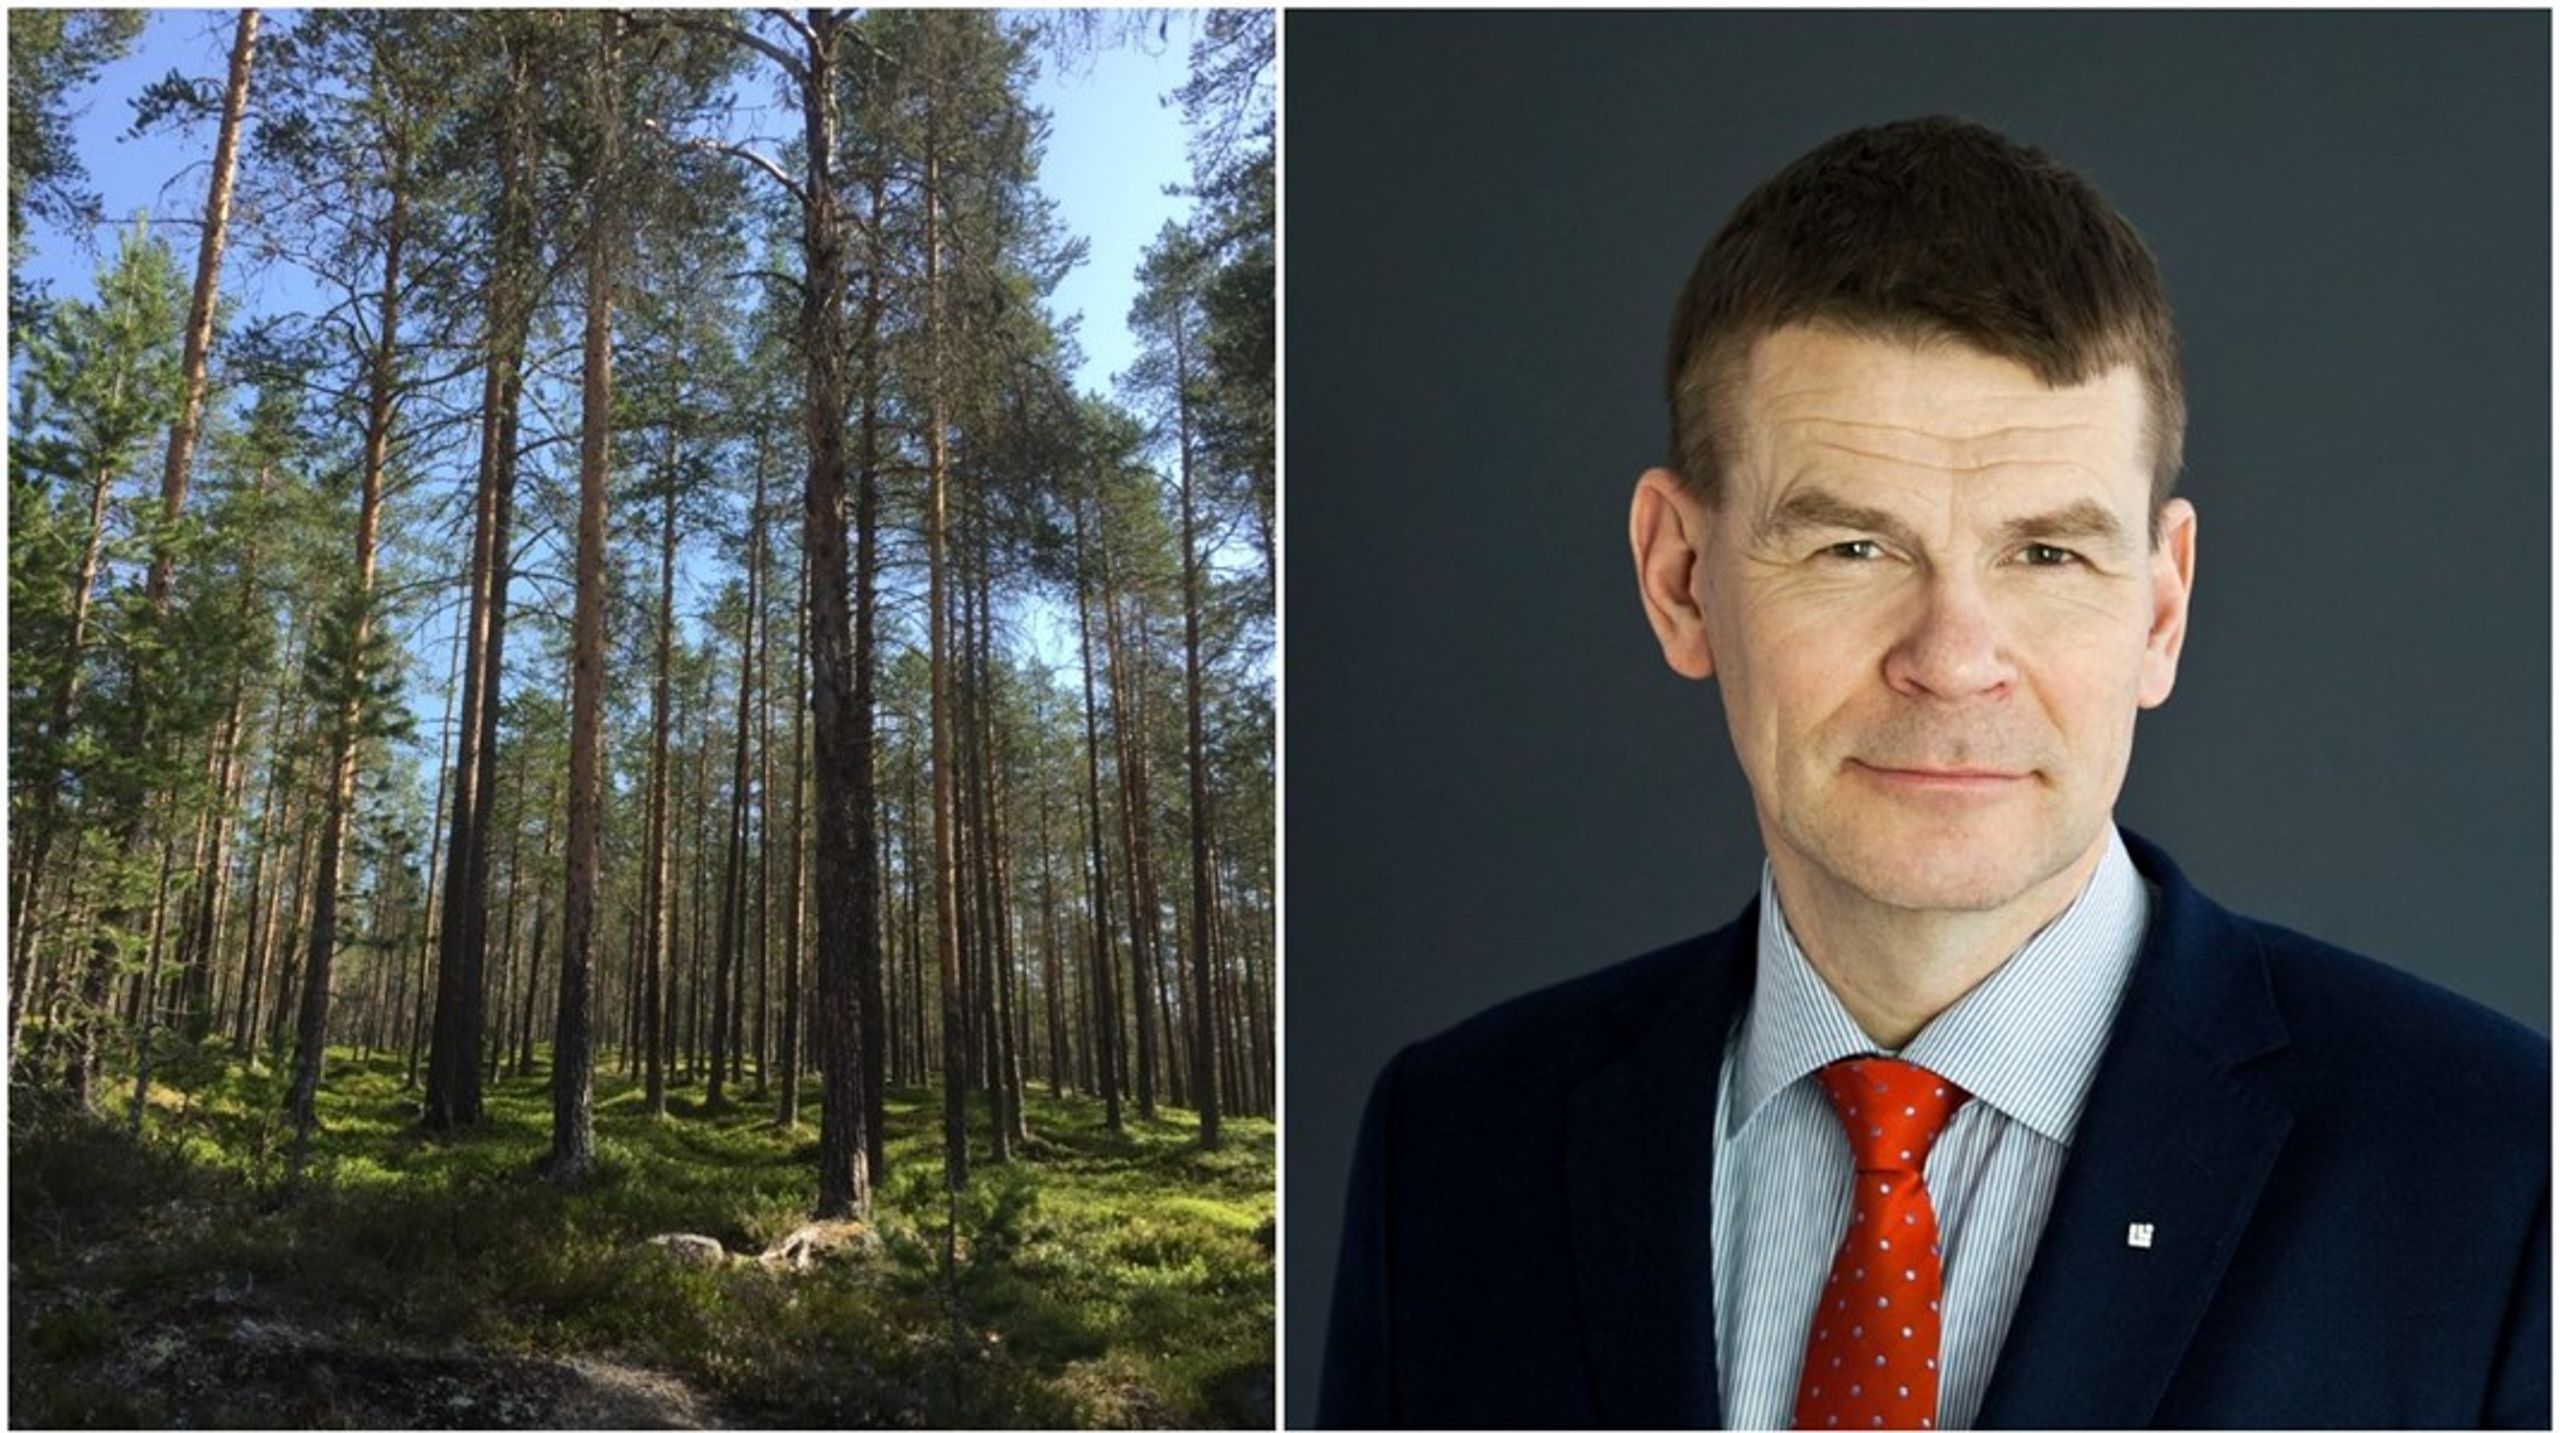 "Vi efterfrågar tydlighet", säger Skogsstyrelsens generaldirektör Herman Sundqvist om den hemställan till regeringen som han har beslutat om.